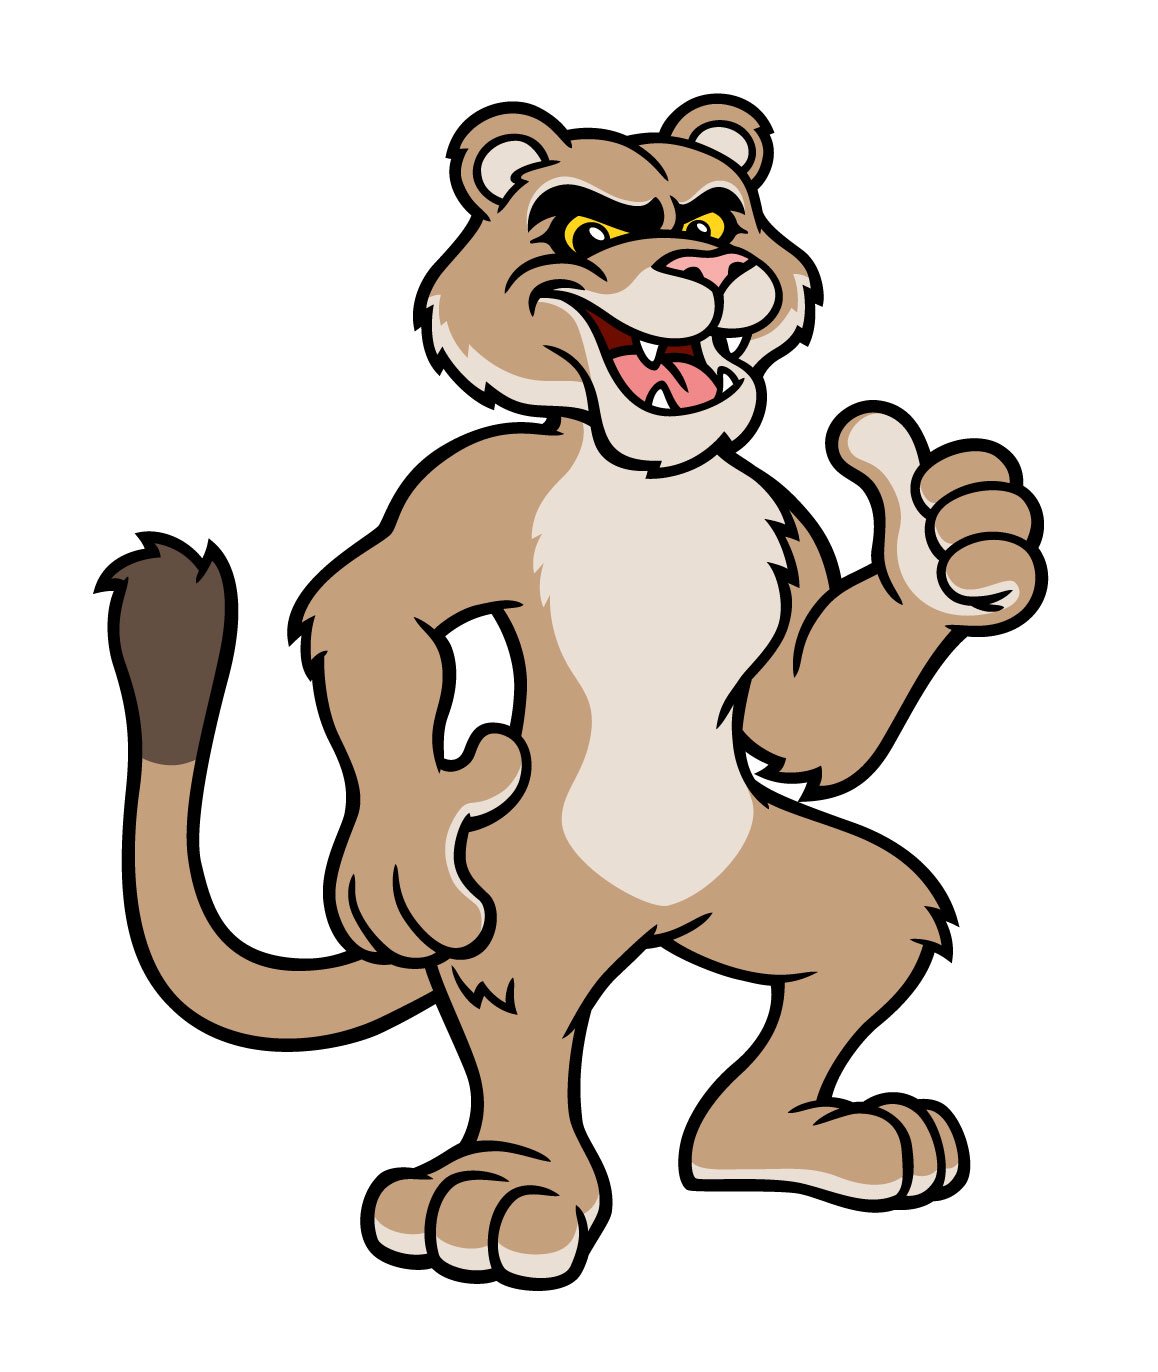 Cougar-Mascot-Character-Vector02.jpg